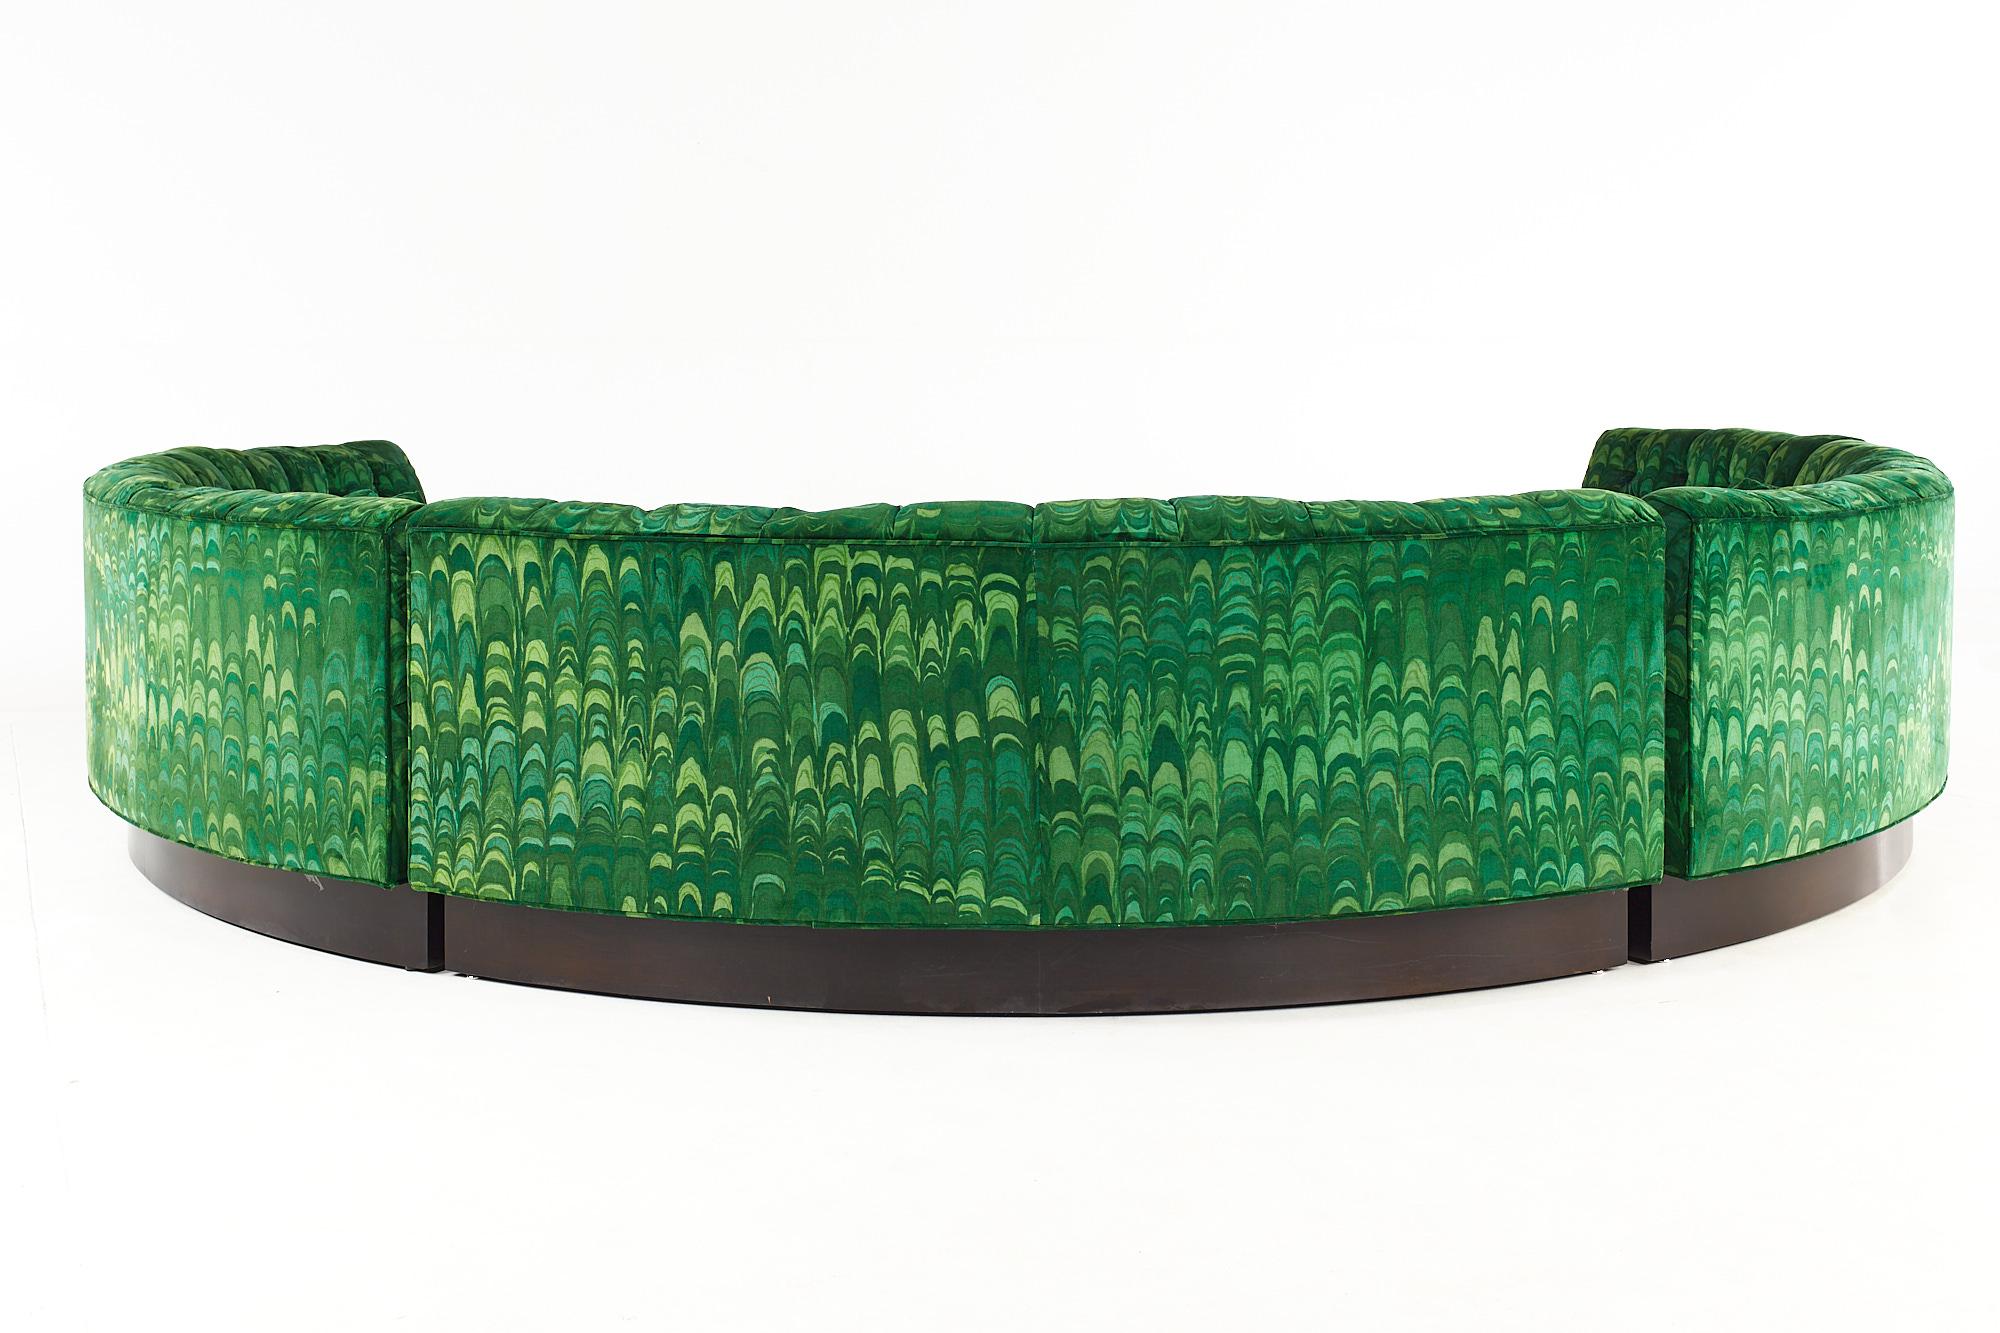 Erwin Lambeth MCM Circular Sectional Pit Sofa Original Jack Lenor Larsen Fabric For Sale 1